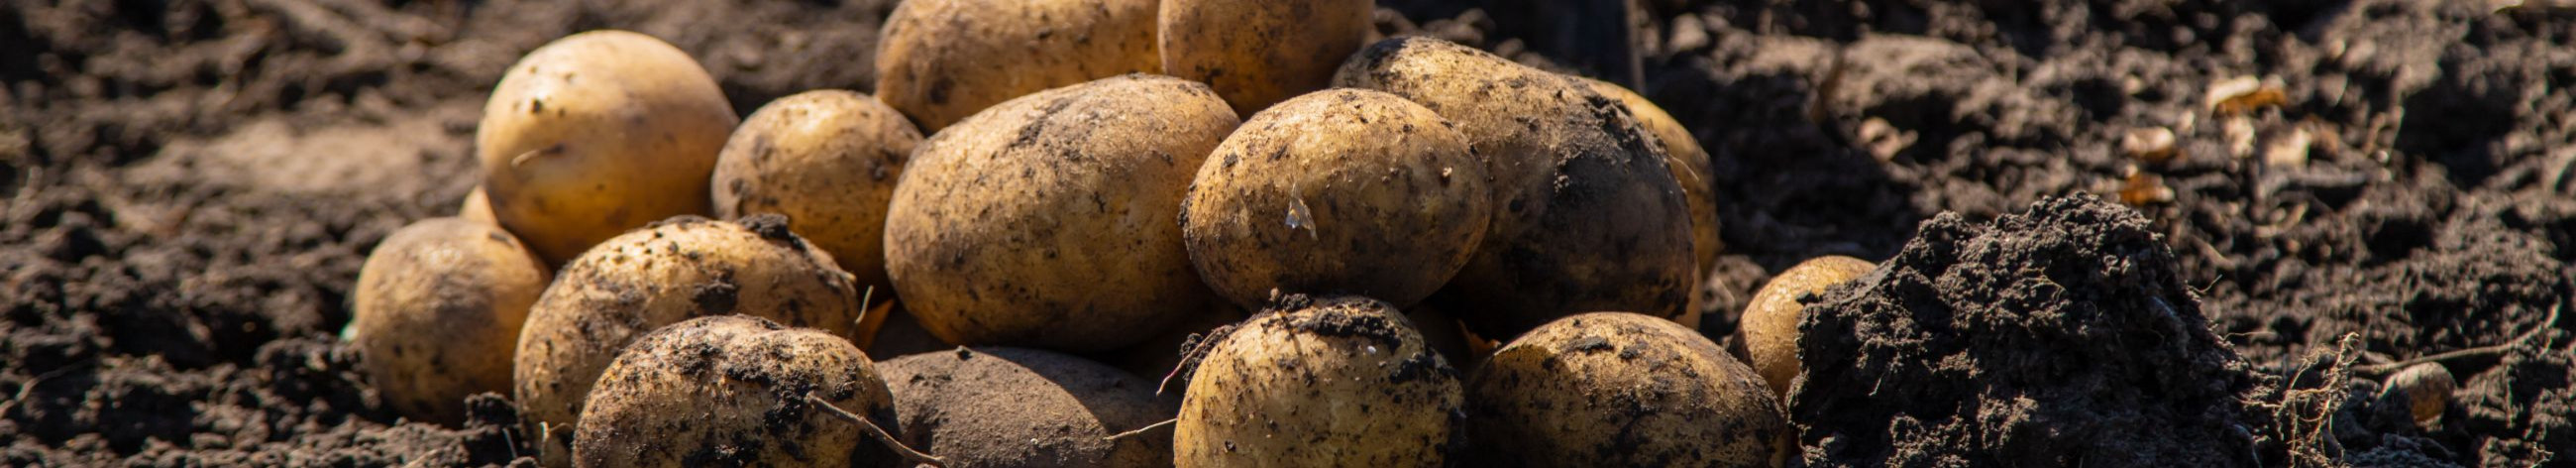 külmakindlad sordid, kartuli seemnete e-pood, kartuliaretuse investeeringud, saagikuse suurendamine, kasvutingimuste parandamine, sortimendid, seemnekartulid, seemnekartul, kartulite müük, kartuli seemnete tarnijad